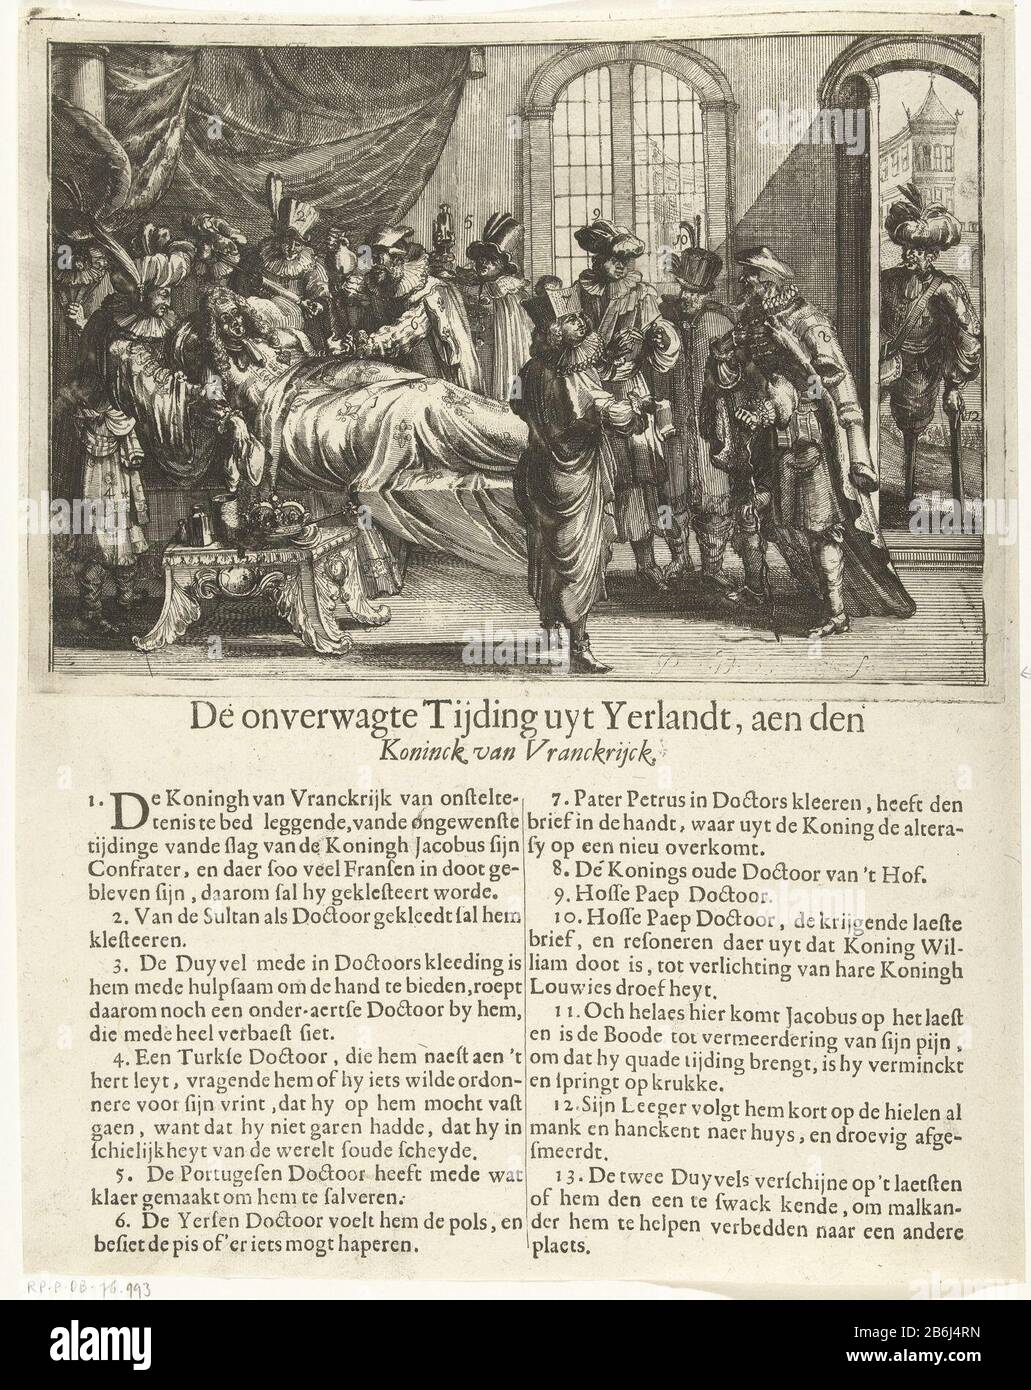 Las noticias inesperadas de Irlanda, 1690 la tierra wagte Tijding uyt  Yerlandt, aen el Koninck de Vranckrijck (objeto de título) las noticias  inesperadas de Irlanda. El rey Luis XIV está enfermo en